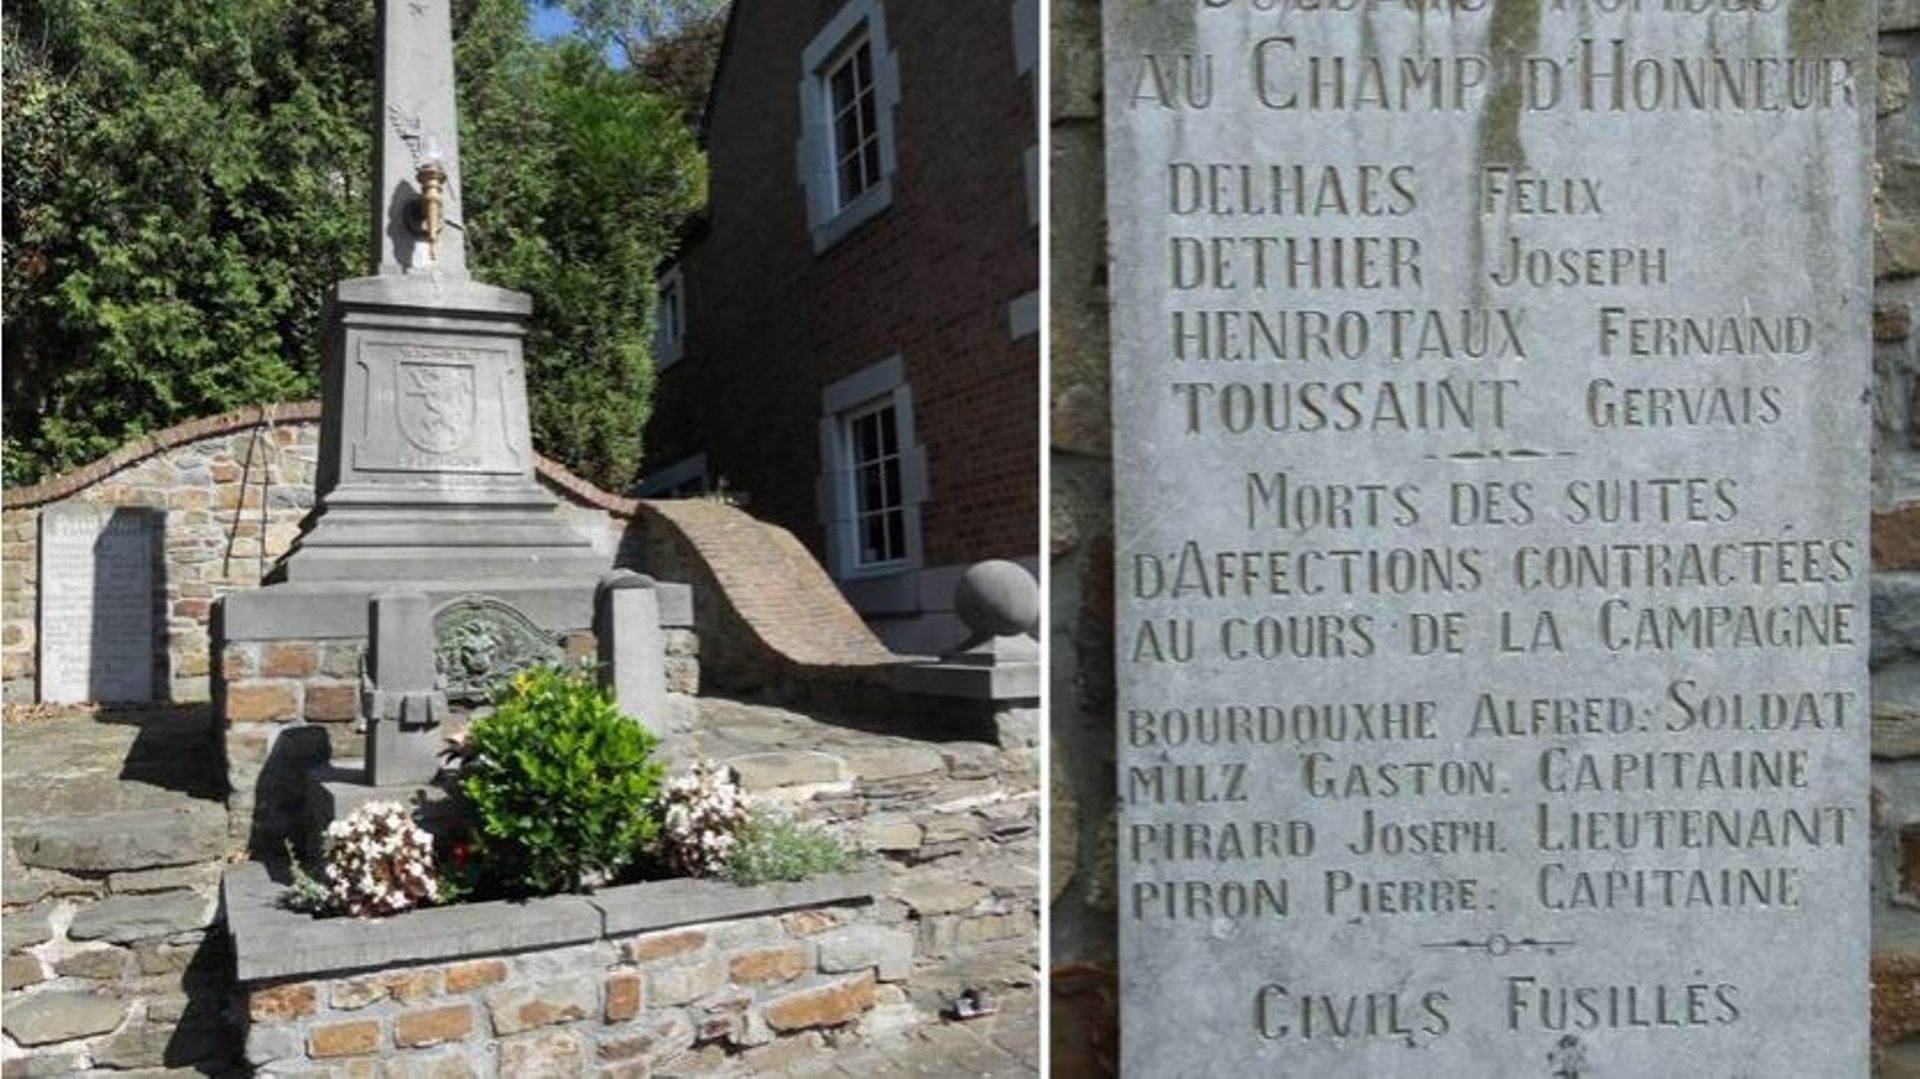 Le monument aux morts de Dalhem mentionne le nom de Joseph Dethier